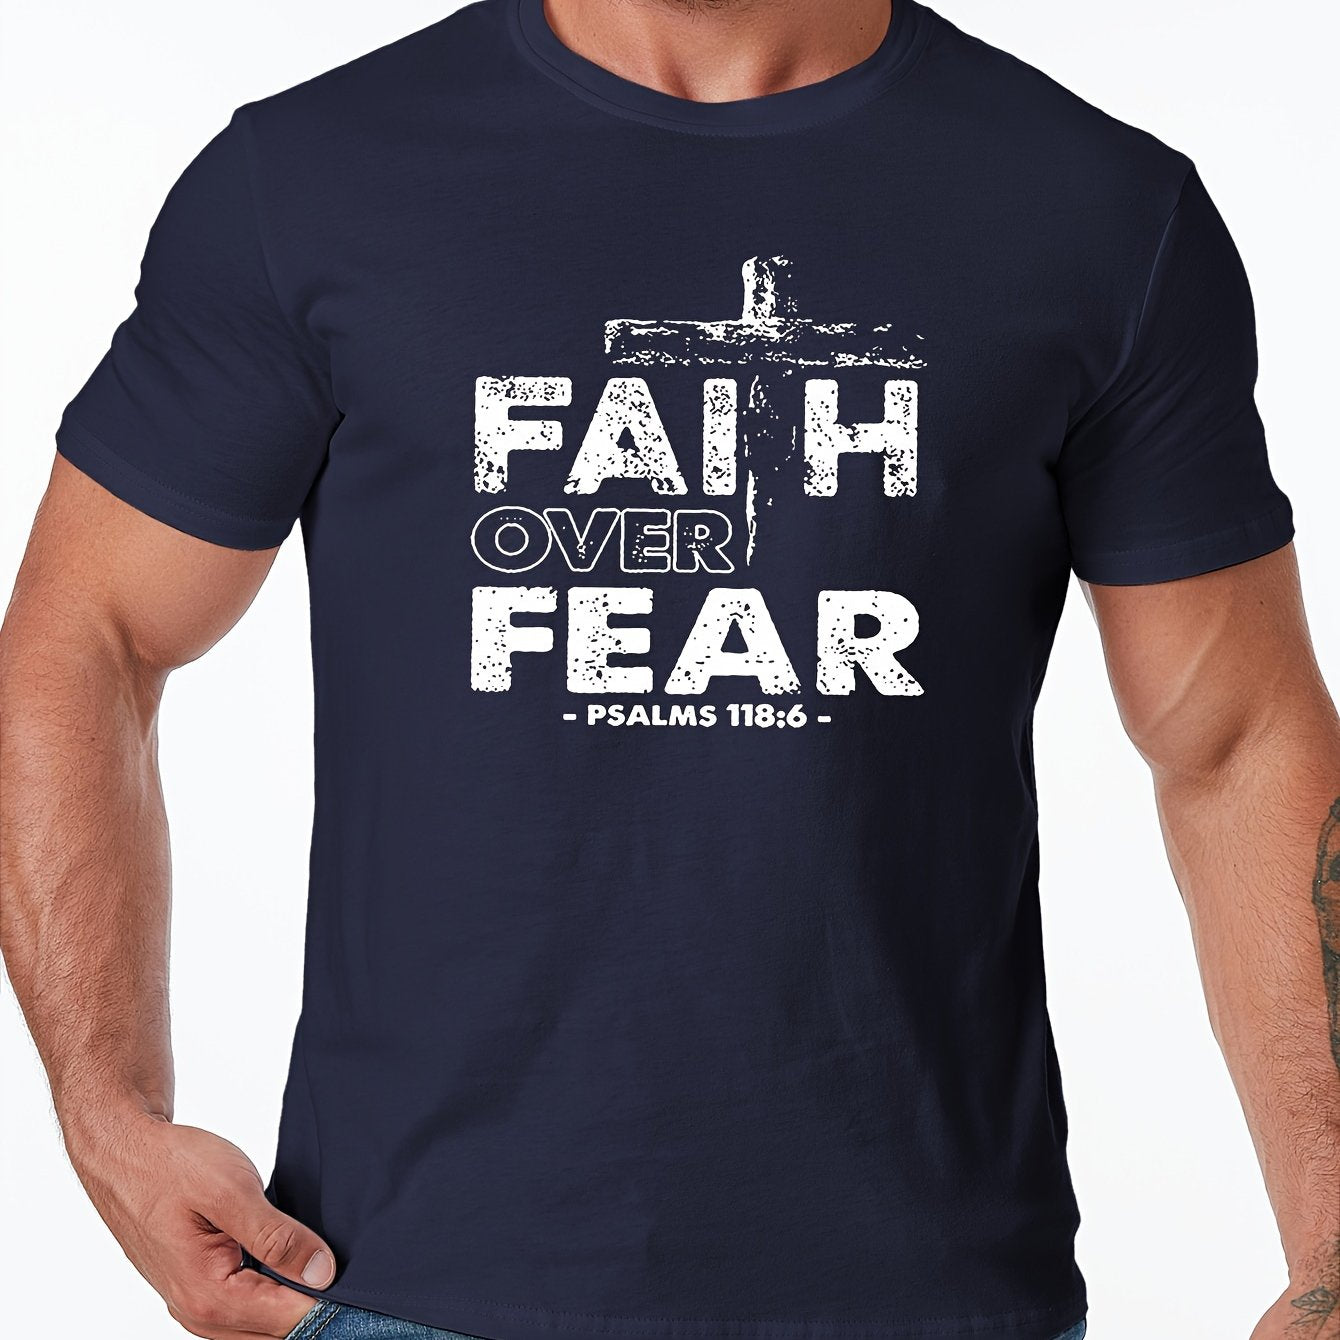 Faith Over Fear Men's Christian T-shirt claimedbygoddesigns